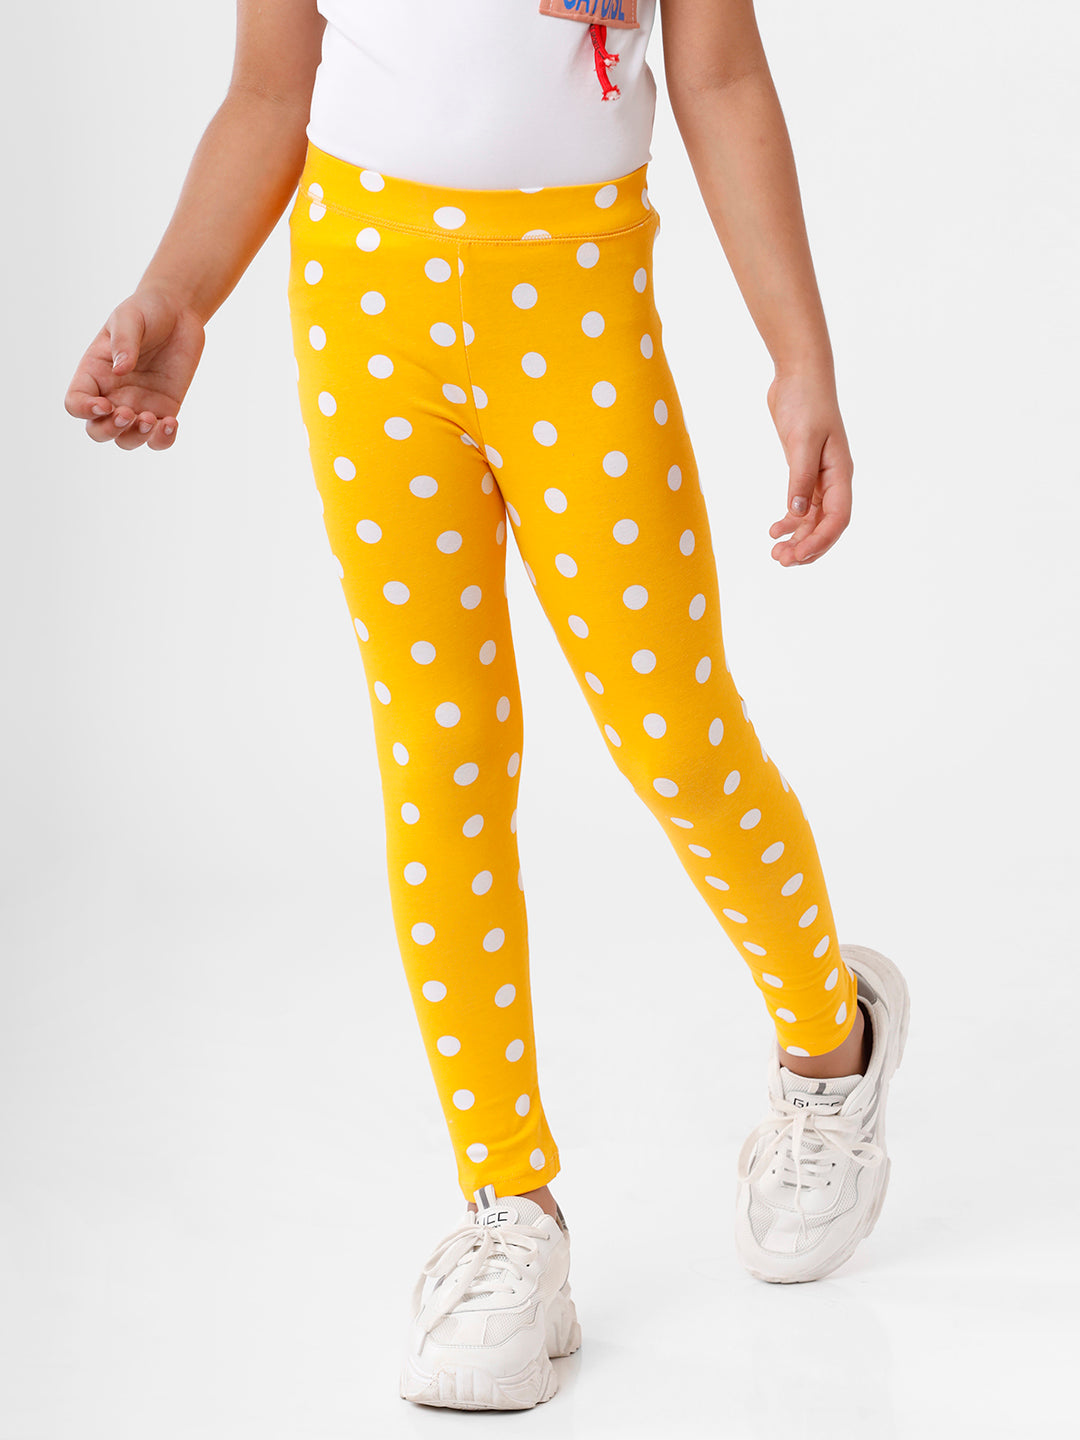 New Carter's Girls 4 5 year Full Length Gold Yellow Leggings Pull On Soft  Stretc | eBay